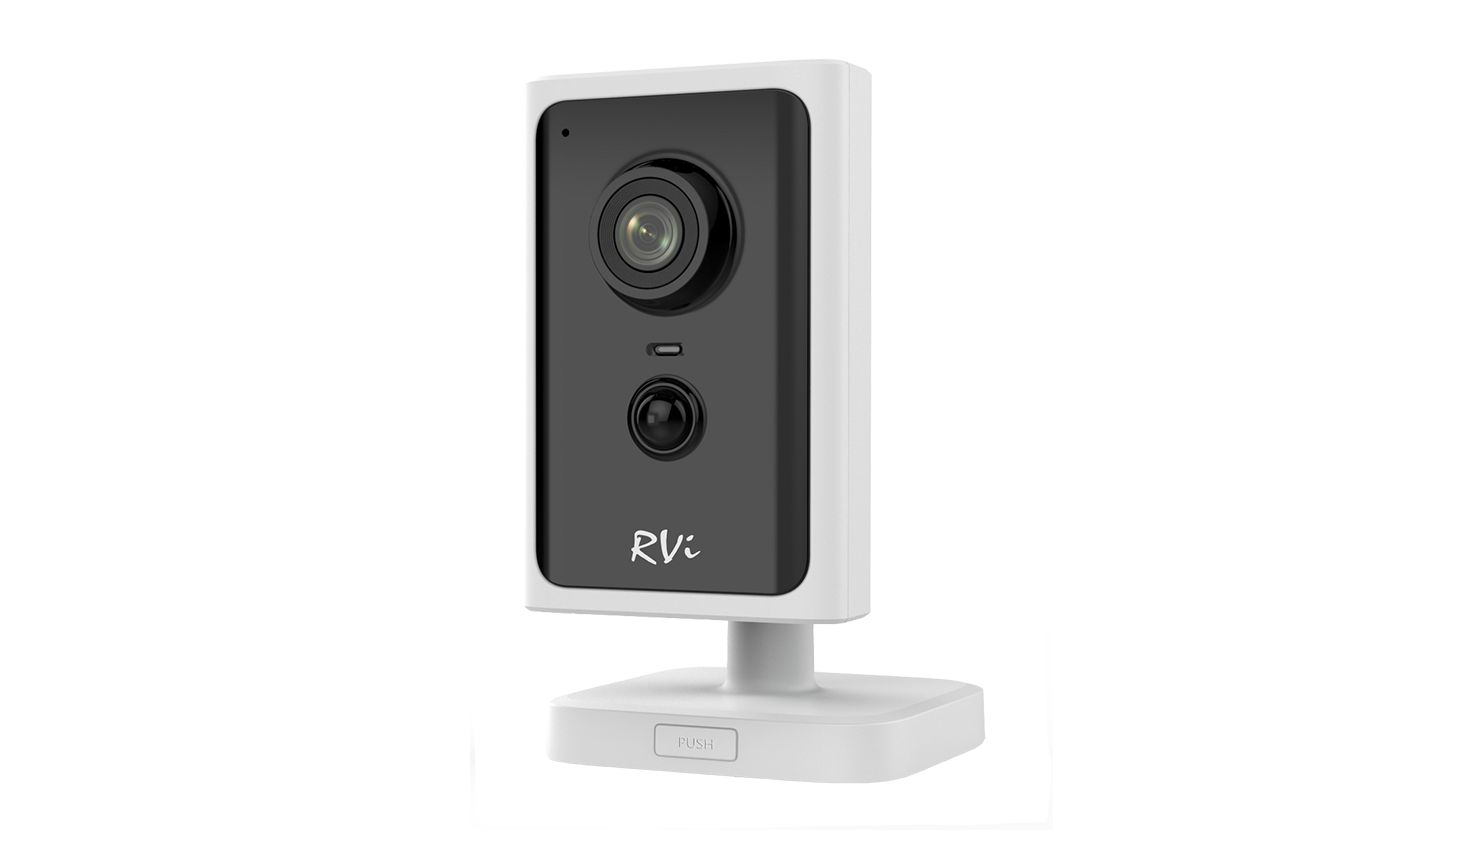 RVi-2NCMW2026: IP-камера корпусная миниатюрная